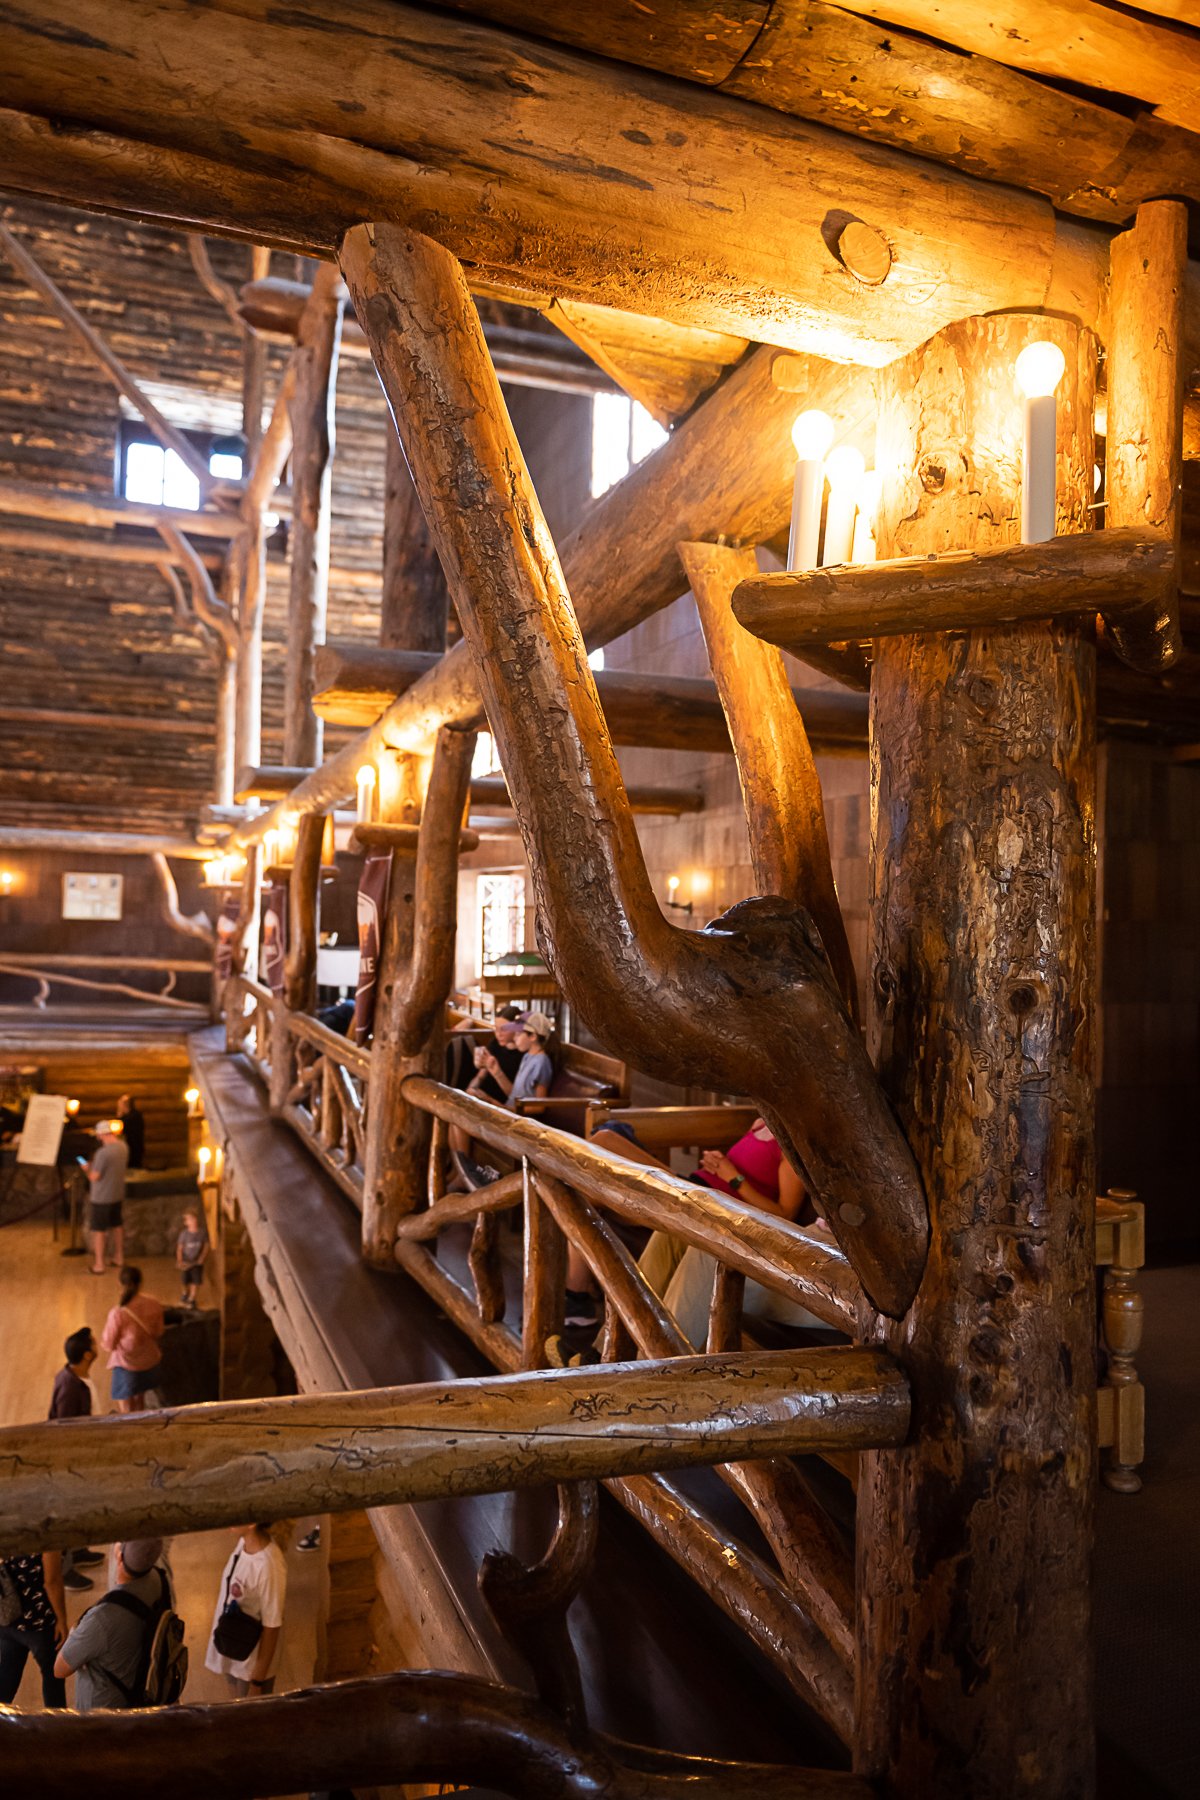 The Old Faithful Inn in Yellowstone National Park